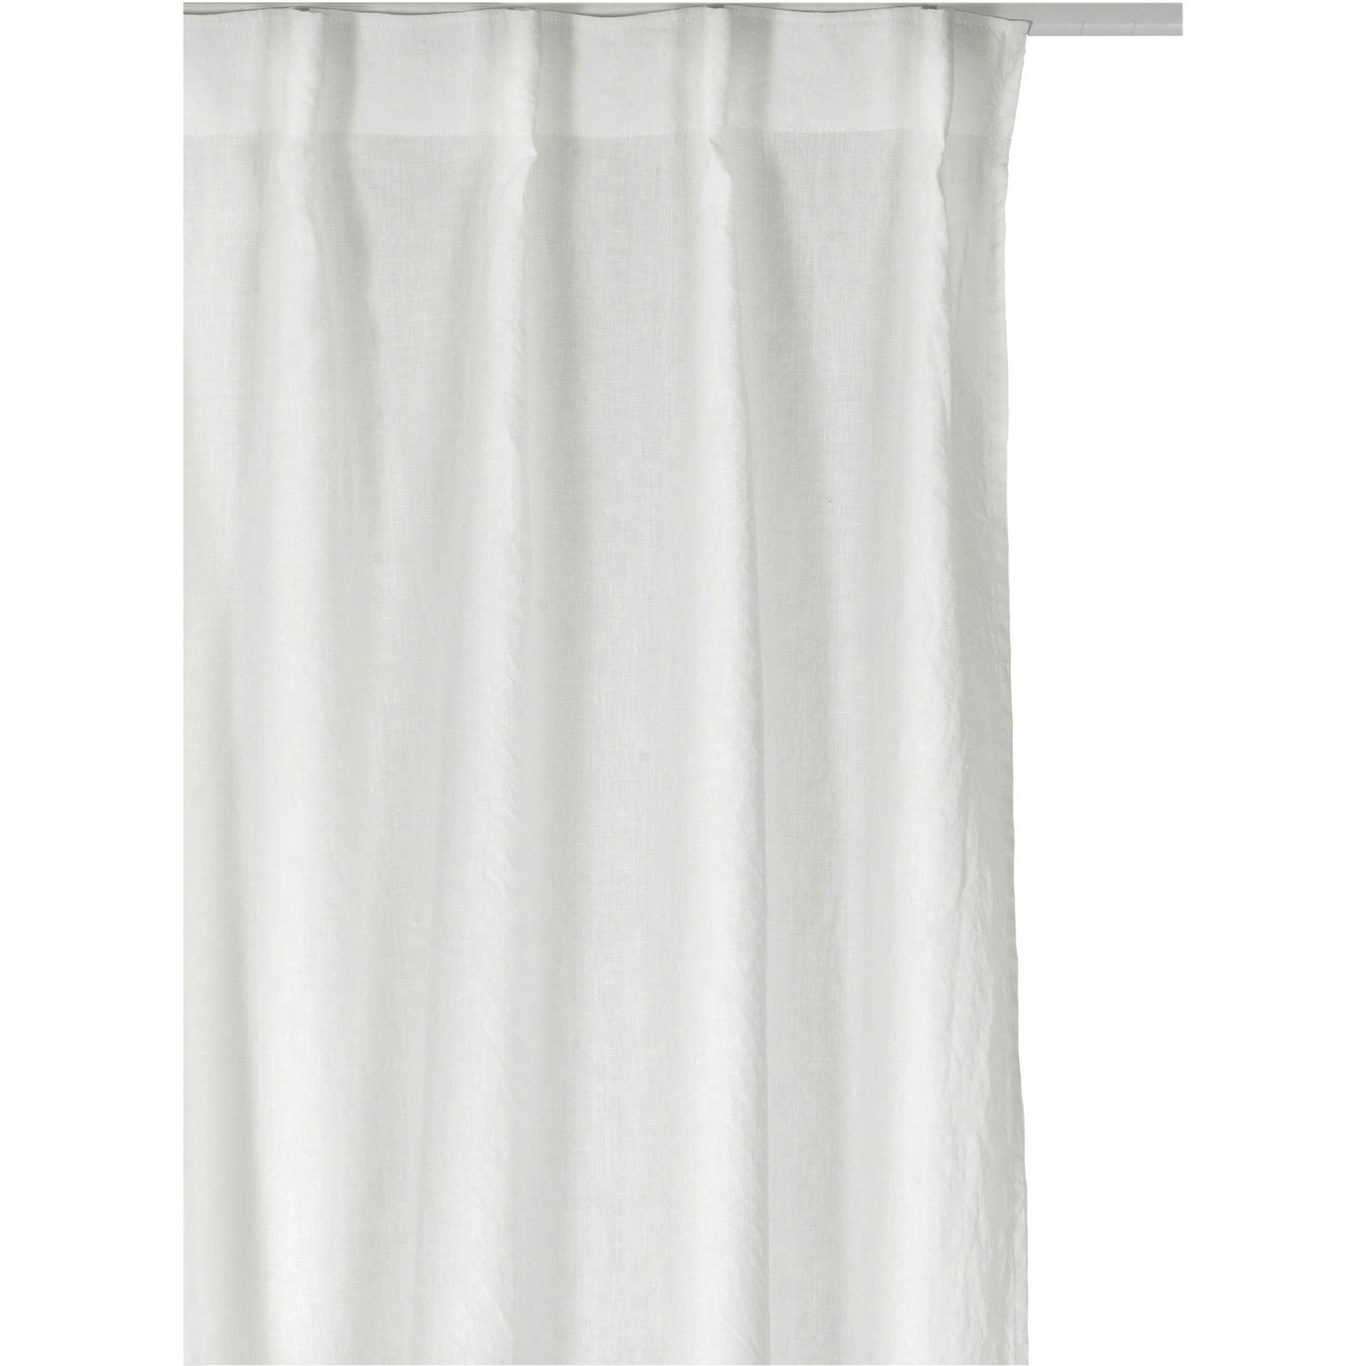 Sunrise Vorhang mit Faltenband 140x290 cm, Weiß